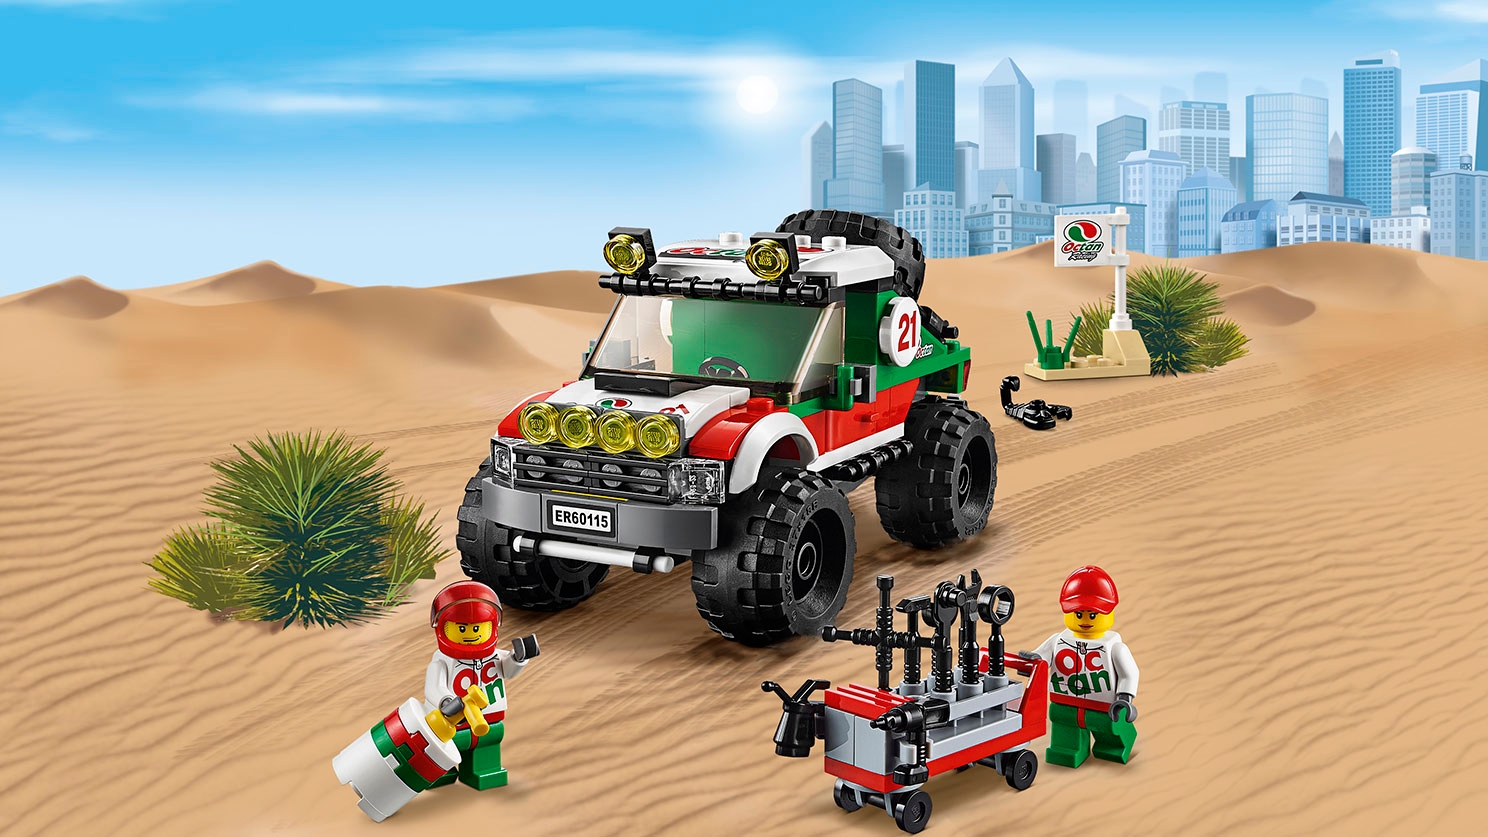 Fuoristrada 4 x 4 con guidatore e minifigure di meccanici Super Veicoli LEGO City – Fuoristrada 4 x 4 60115